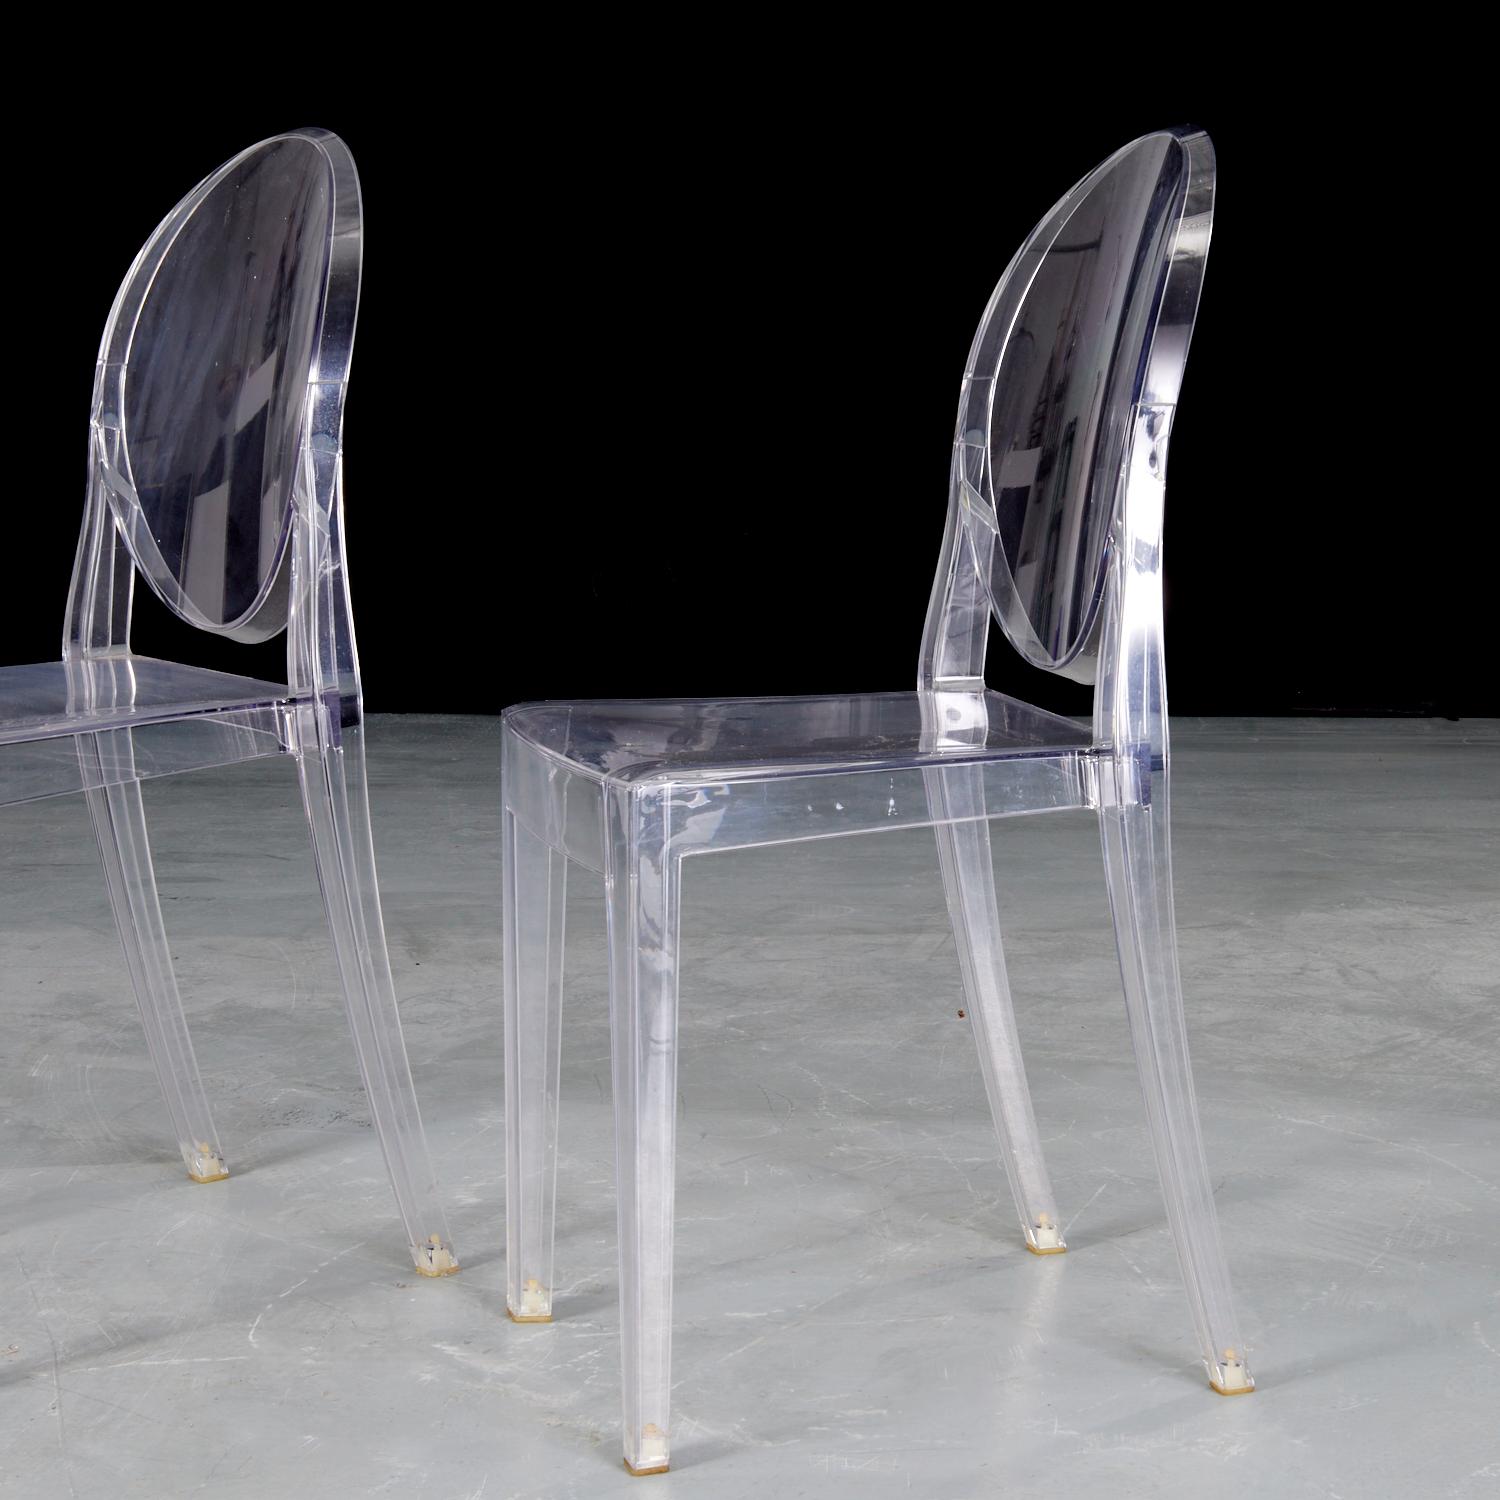 21ème siècle, A.I.C. pour Kartell, une paire de chaises Victoria Ghost transparentes. marqué sur le dos.

Conçue par Philippe Starck, la chaise Kartell Victoria Ghost Chair est une chaise née de lignes classiques et de technologies modernes. Le